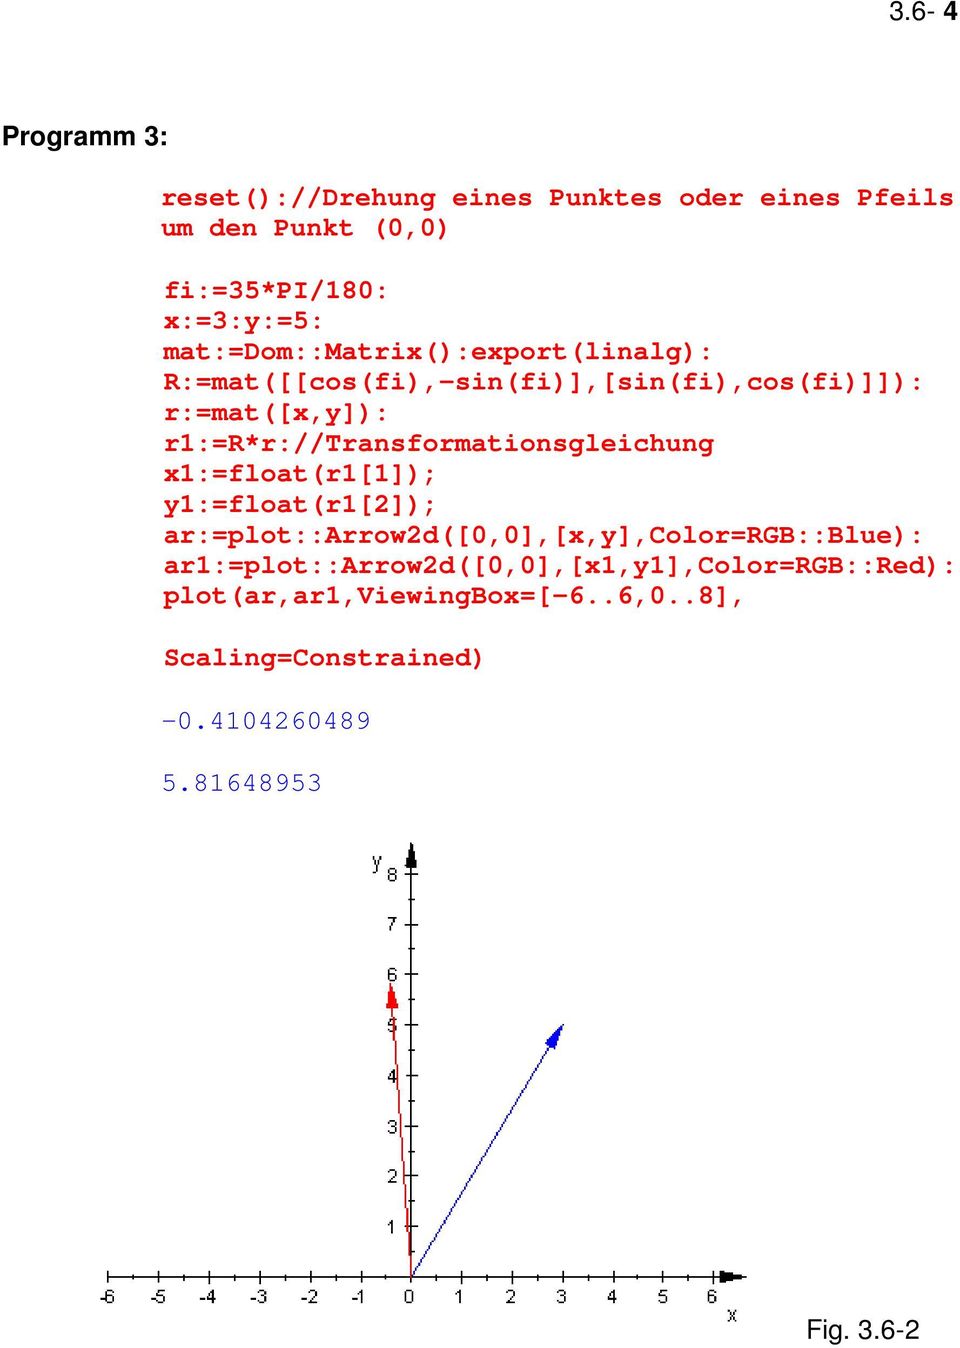 r1:=r*r://transformationsgleichung x1:=float(r1[1]); y1:=float(r1[2]); ar:=plot::arrow2d([0,0],[x,y],color=rgb::blue):